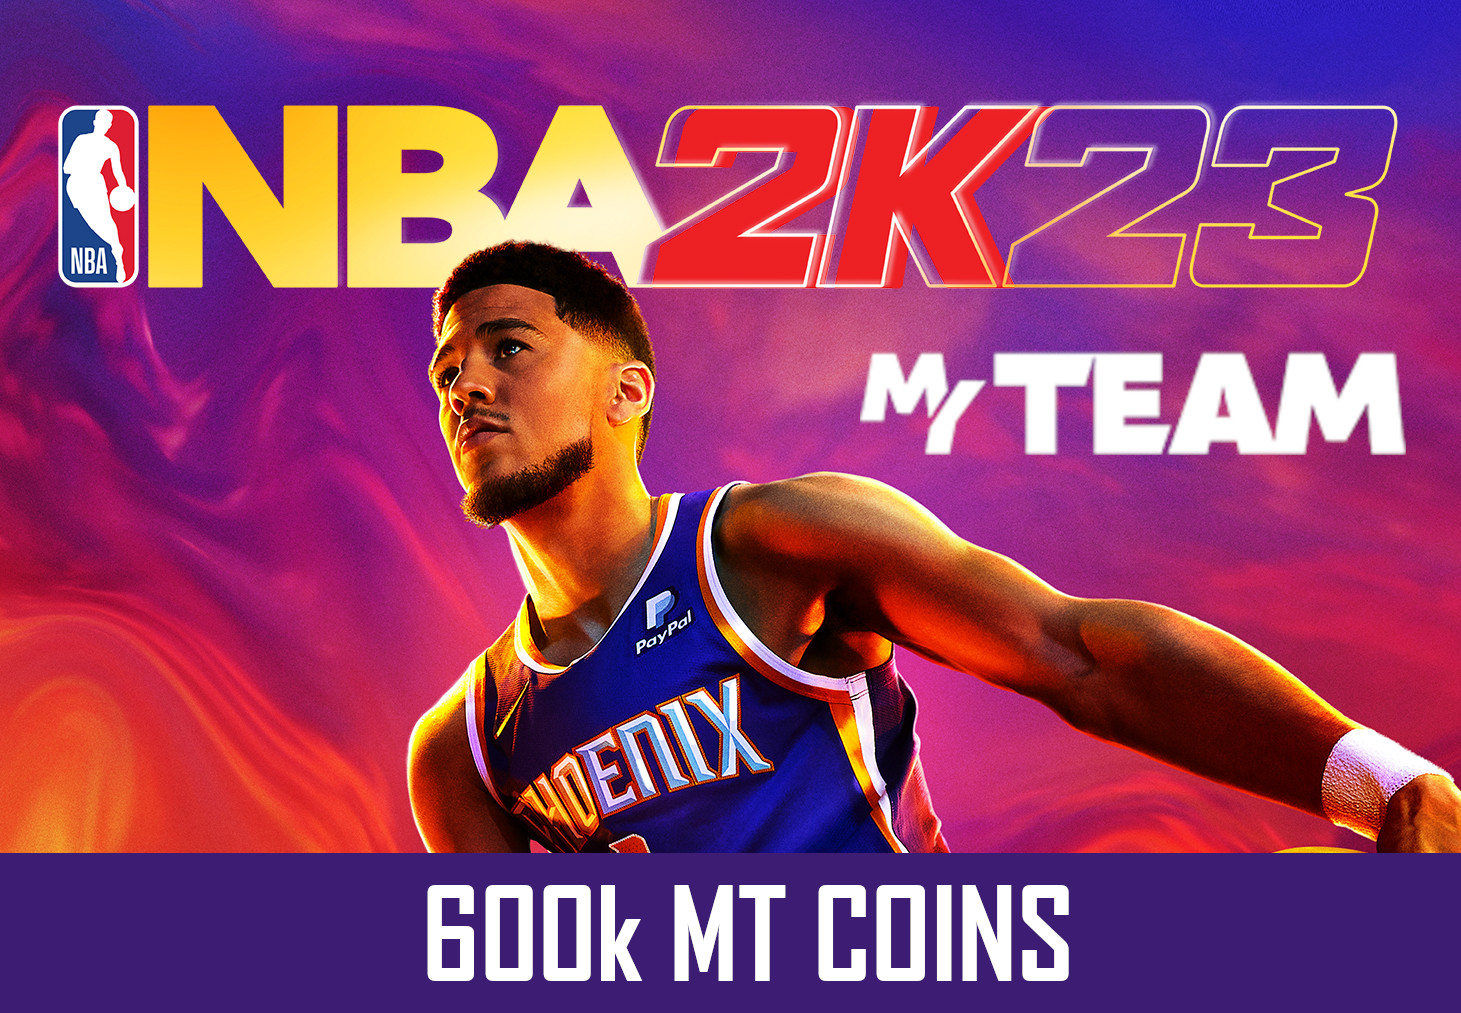 NBA 2K23 - 600k MT Coins - GLOBAL XBOX One/Series X|S